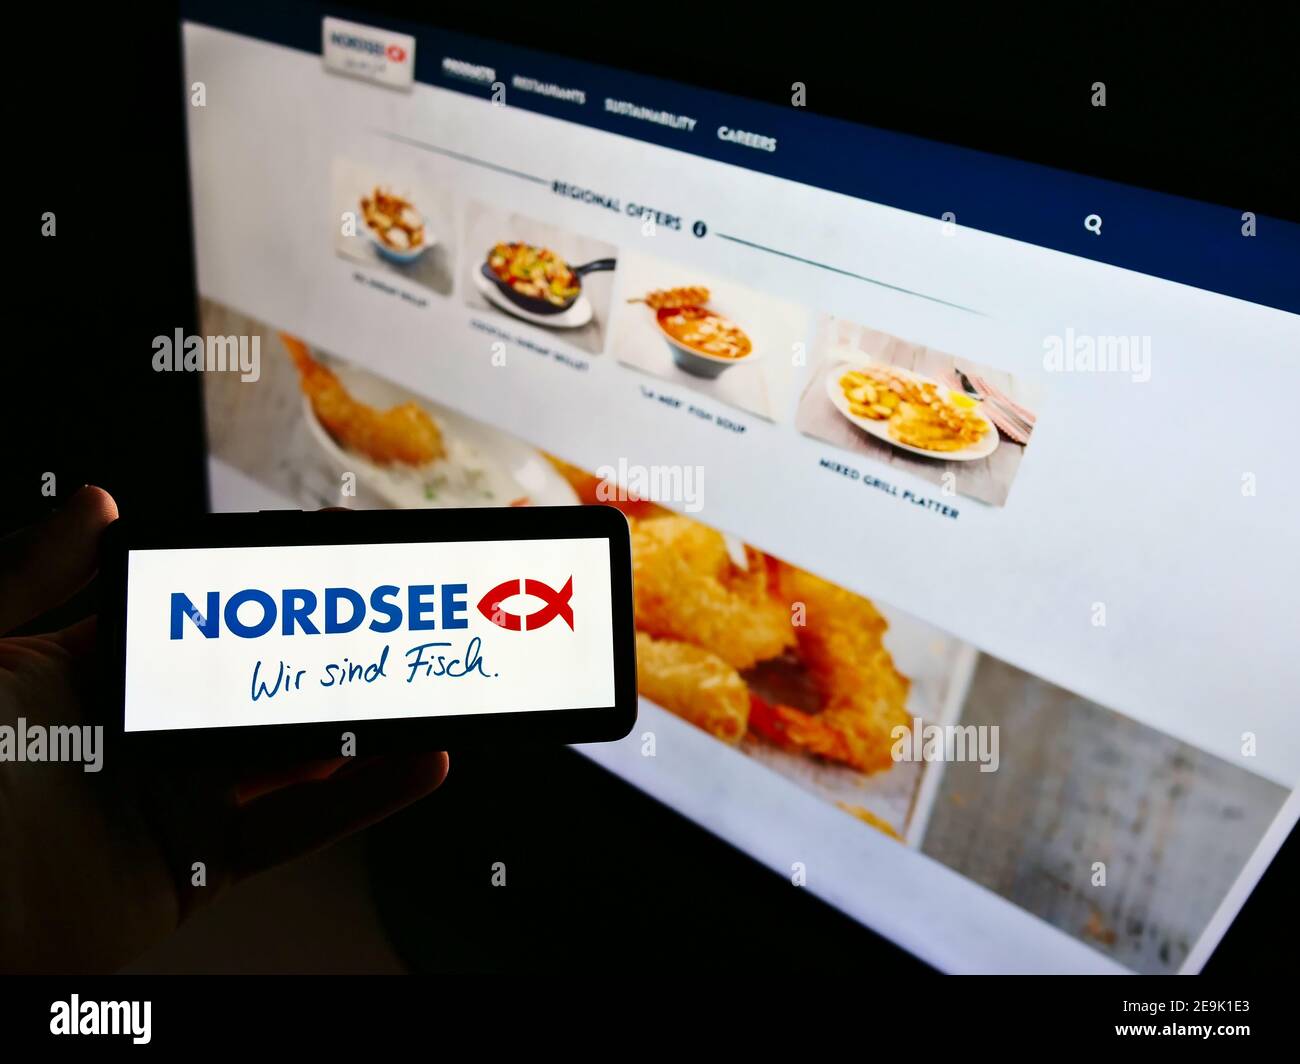 Persona che tiene il cellulare con il logo della catena tedesca di fast-food Nordsee GmbH (frutti di mare) in esposizione davanti al sito web. Mettere a fuoco lo schermo del telefono. Foto Stock